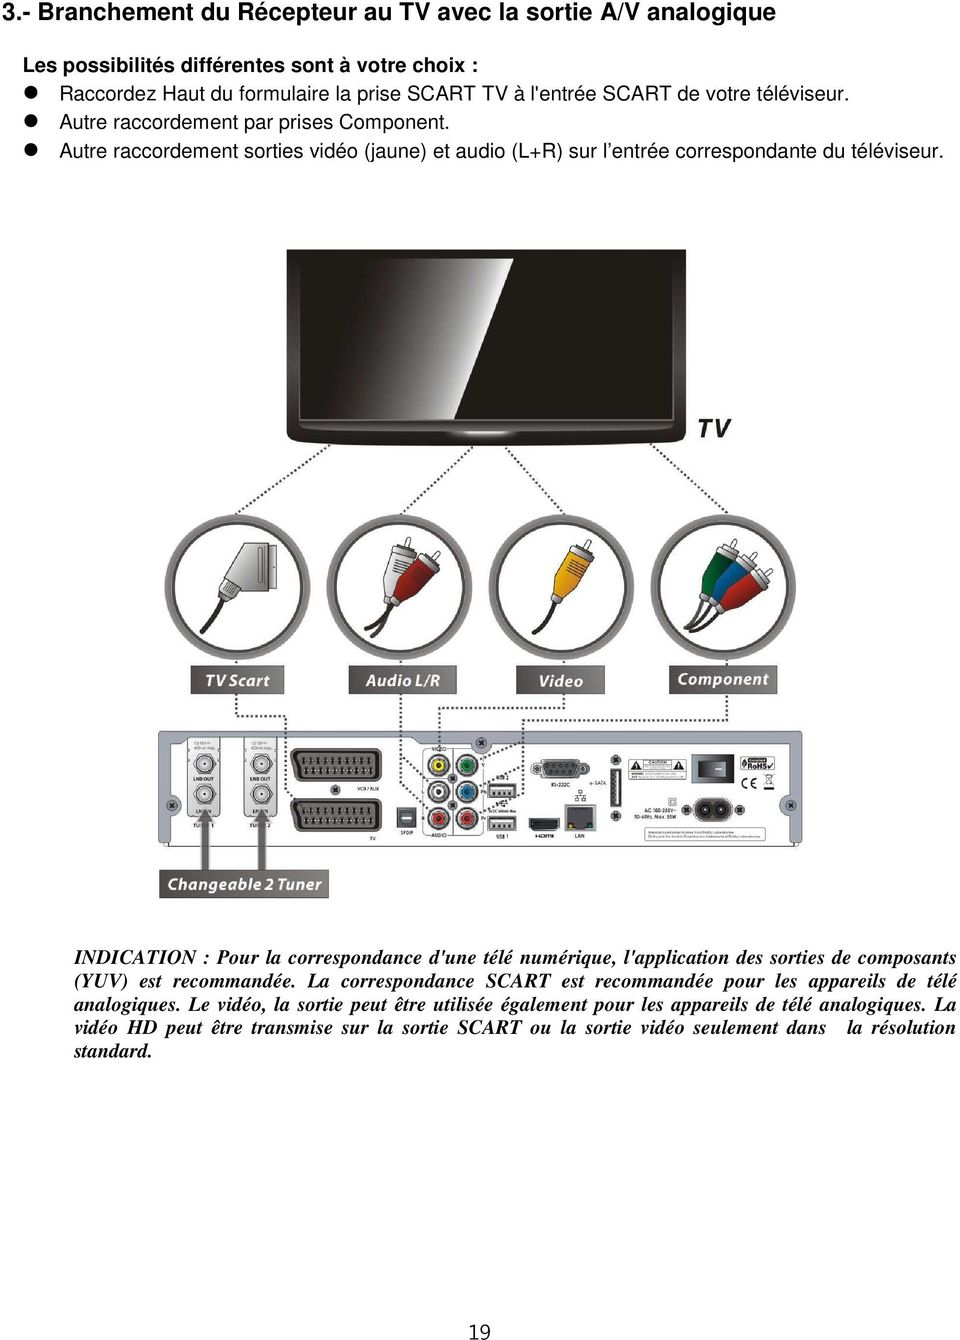 INDICATION : Pour la correspondance d'une télé numérique, l'application des sorties de composants (YUV) est recommandée.